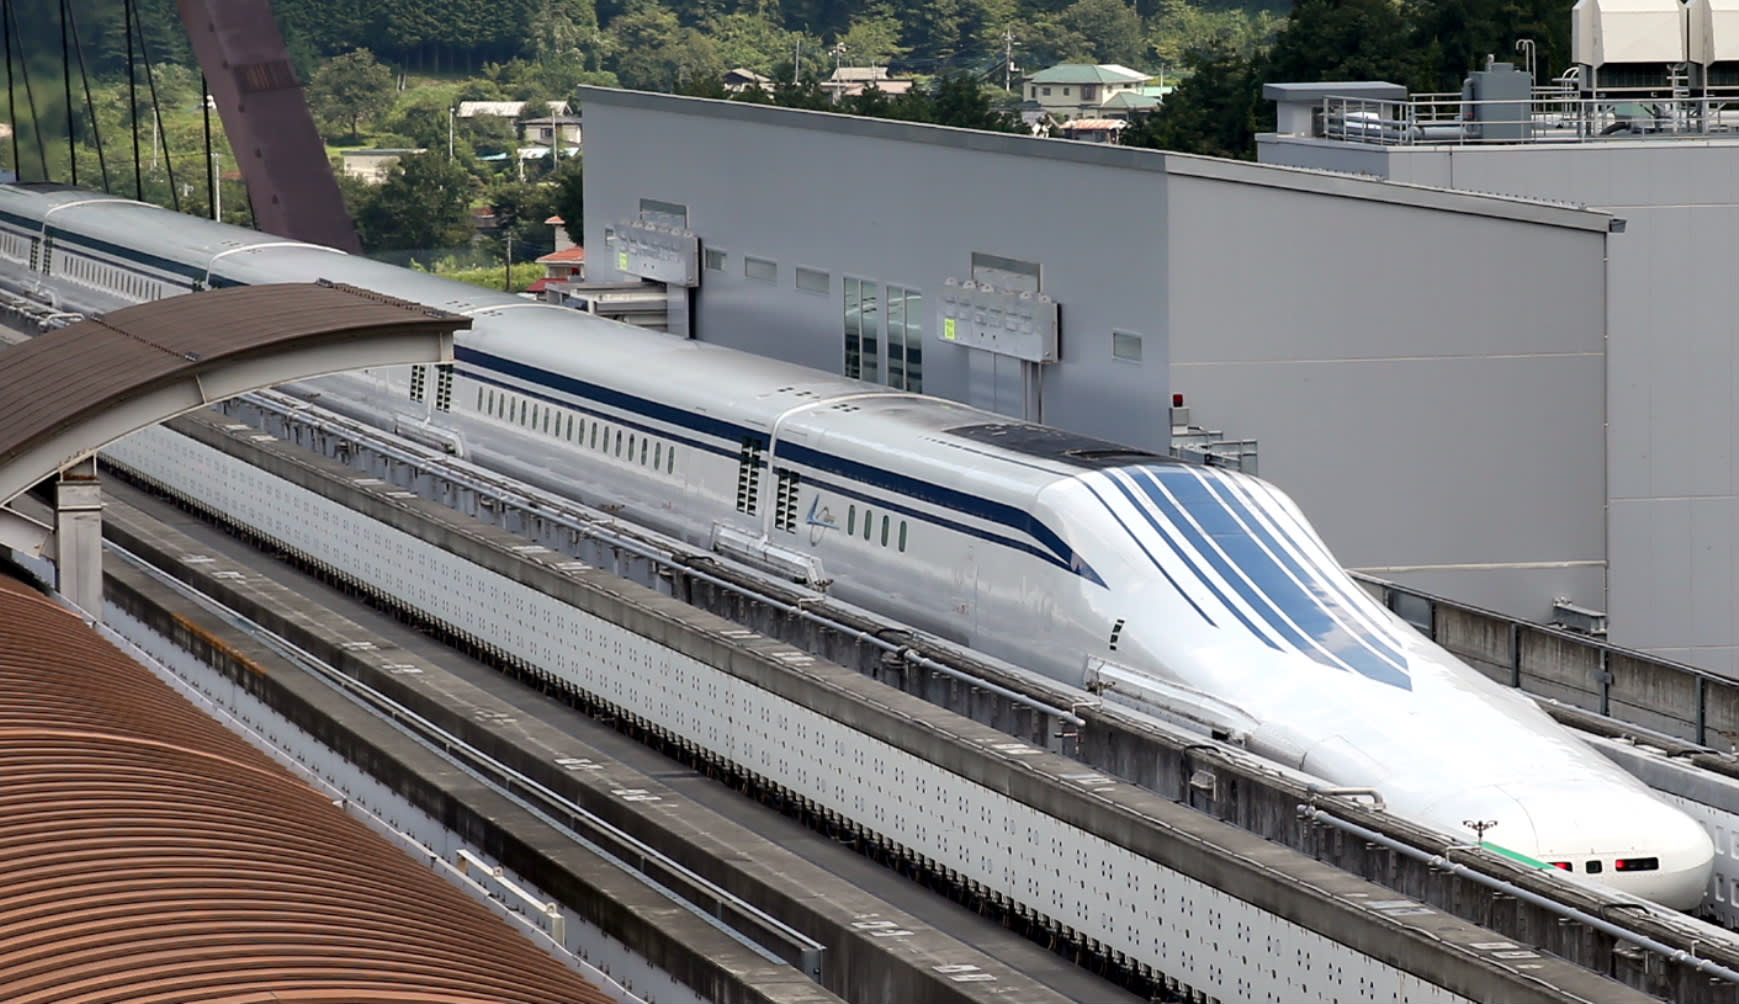 Tàu maglev (Chuo Shinkansen) của Nhật Bản có thể chạy với tốc độ tối đa lên đến 603 km/h. Ảnh: Wikimedia.